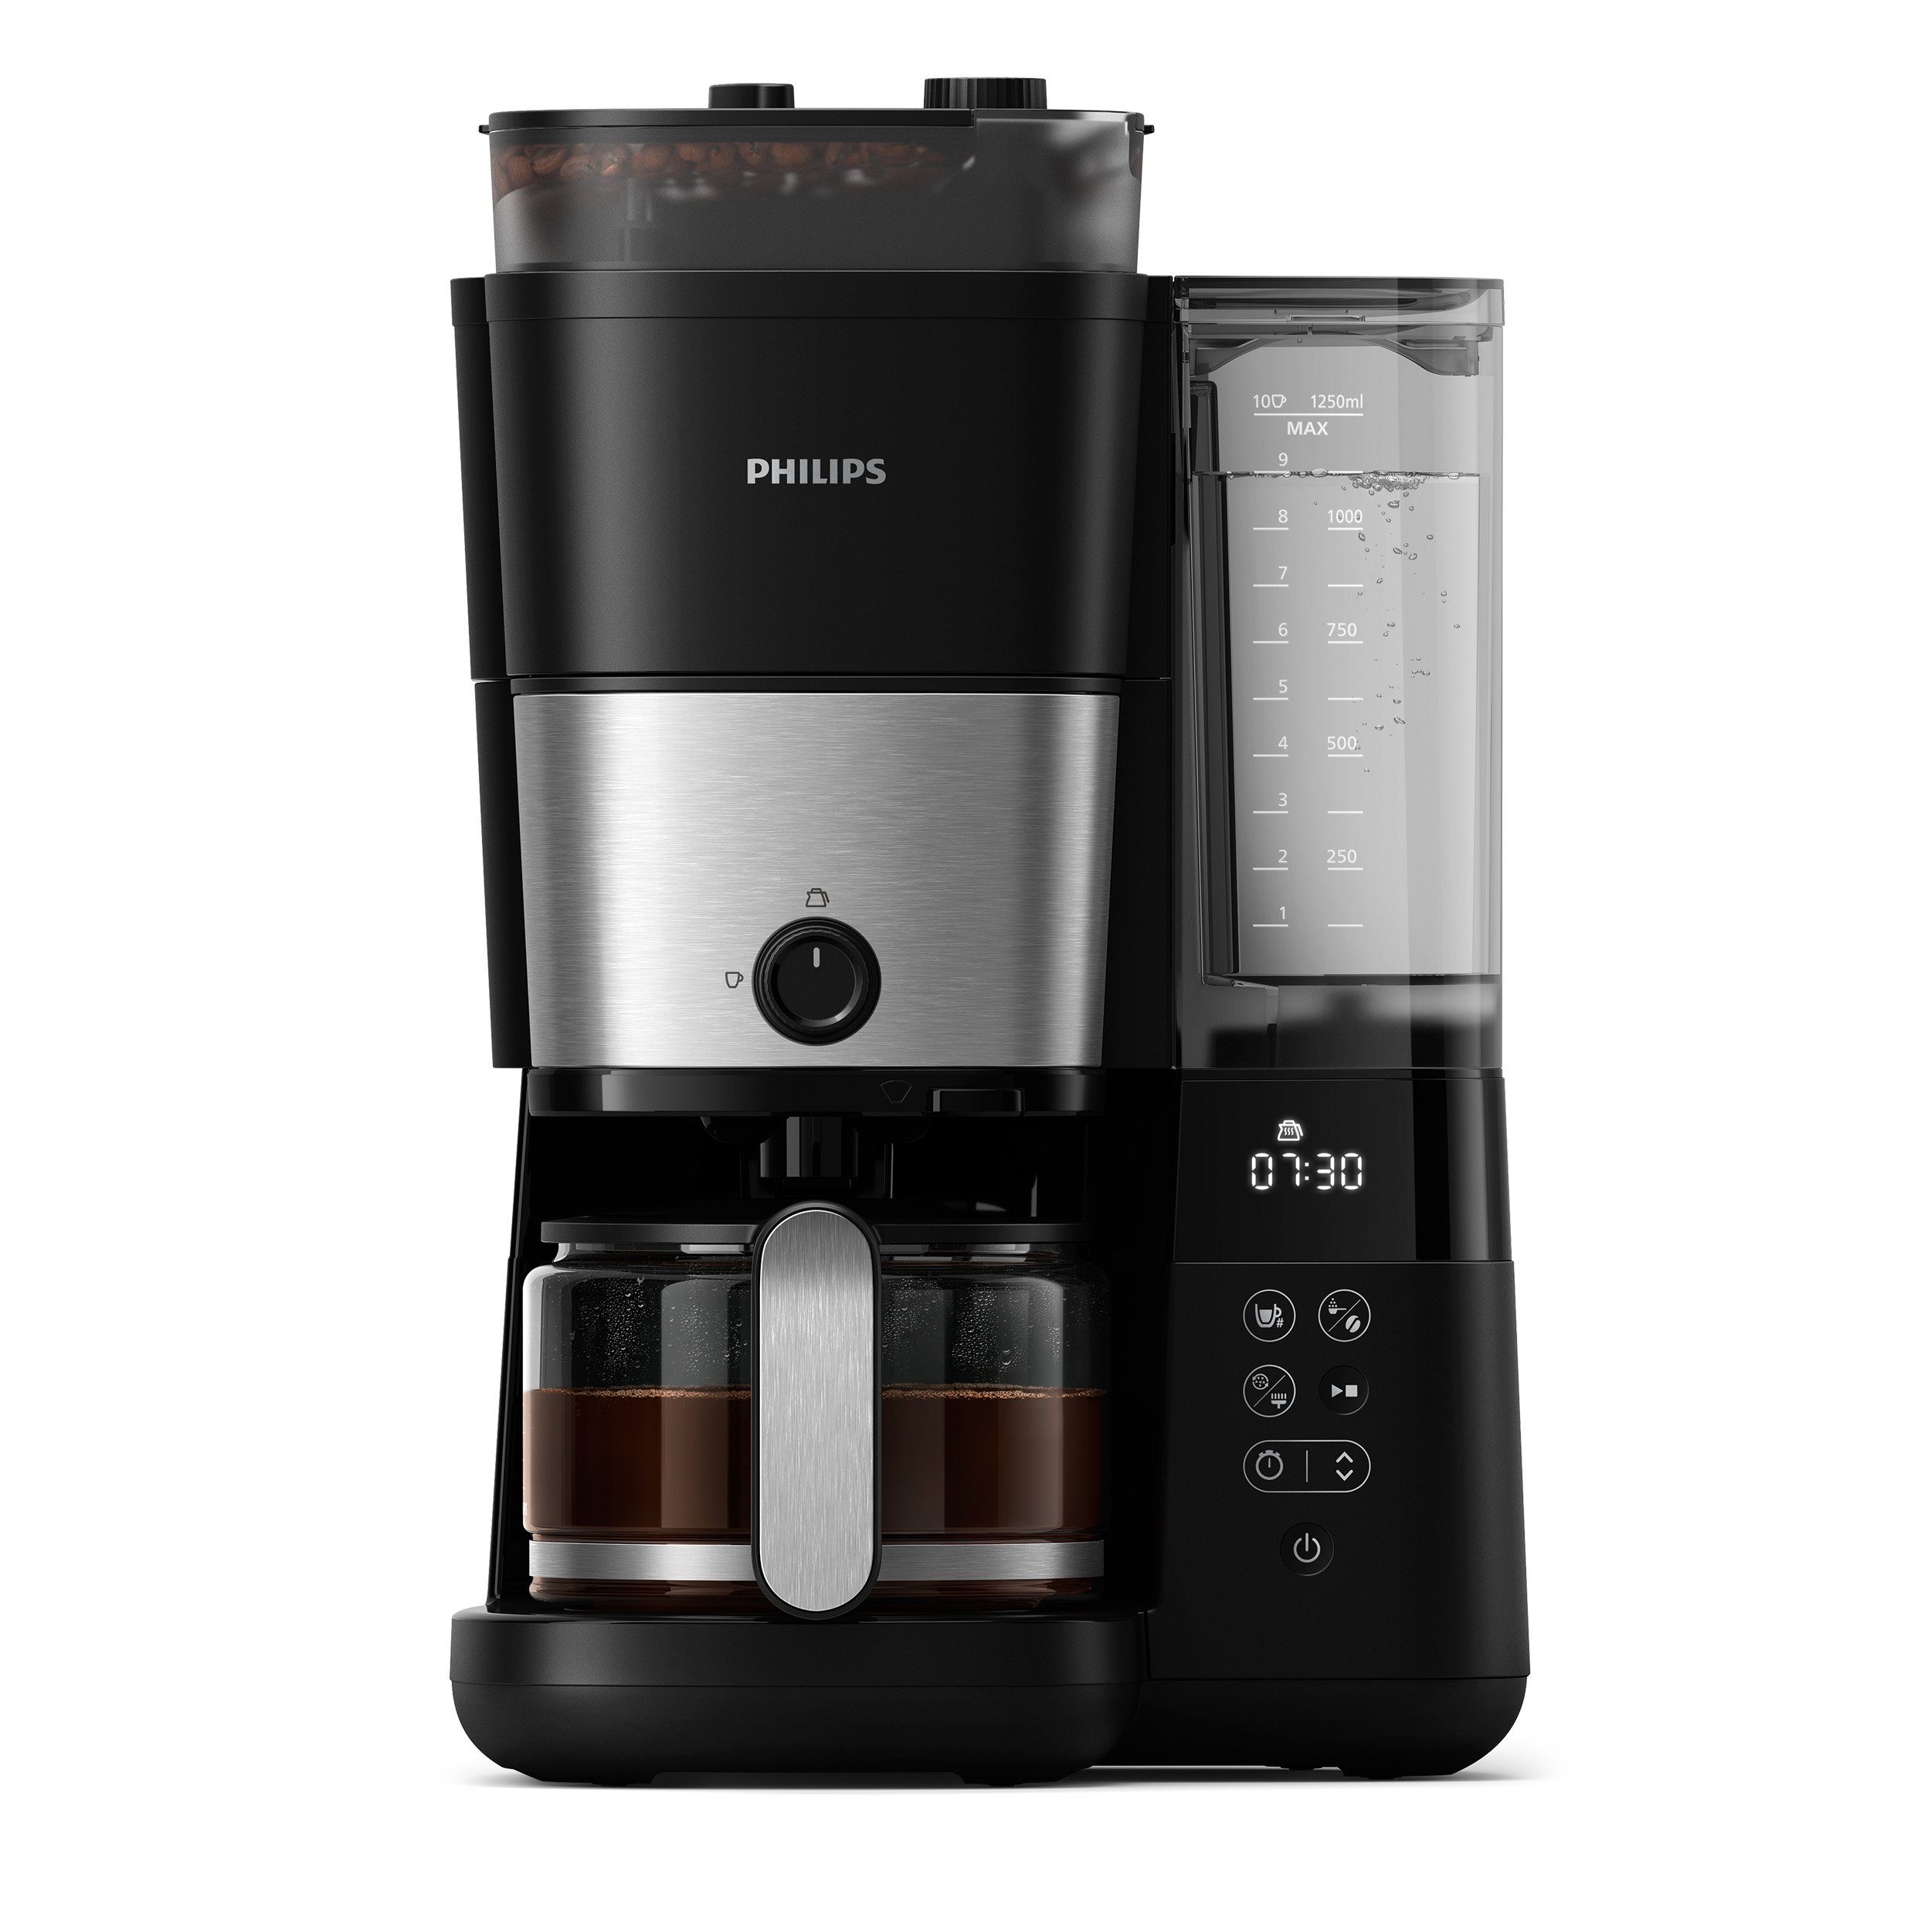 mit Philips Dosierung mit Mahlwerk Kaffeemaschine HD7888/01 1x4, Papierfilter All-in-1 und Smart Brew, Kaffeebohnenbehälter